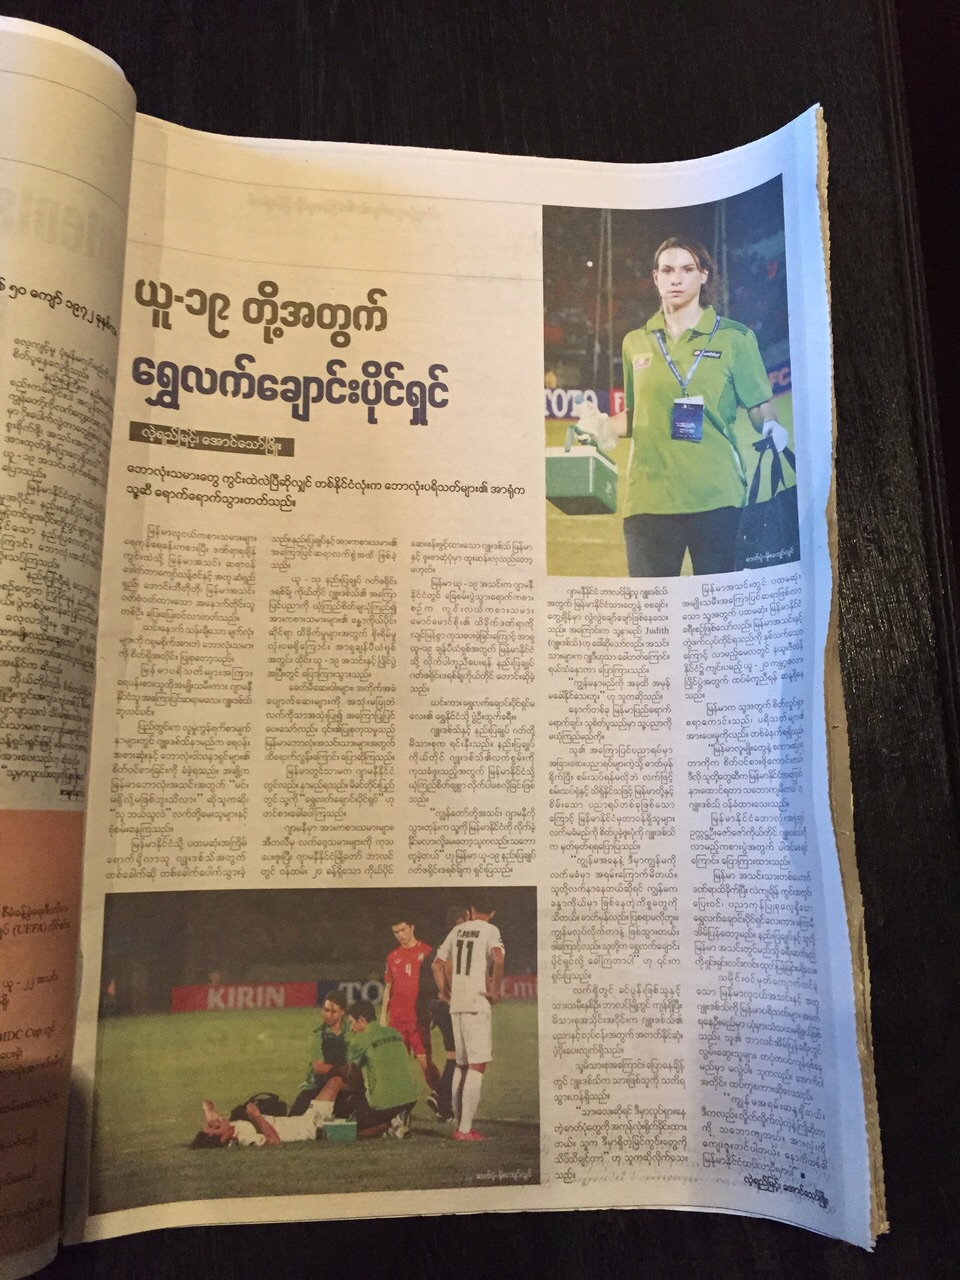 Judith Bulir - Physiotherapie und Sporttherapie aus Berlin Reinickendorf in Myanmar - Fußballmannschaft